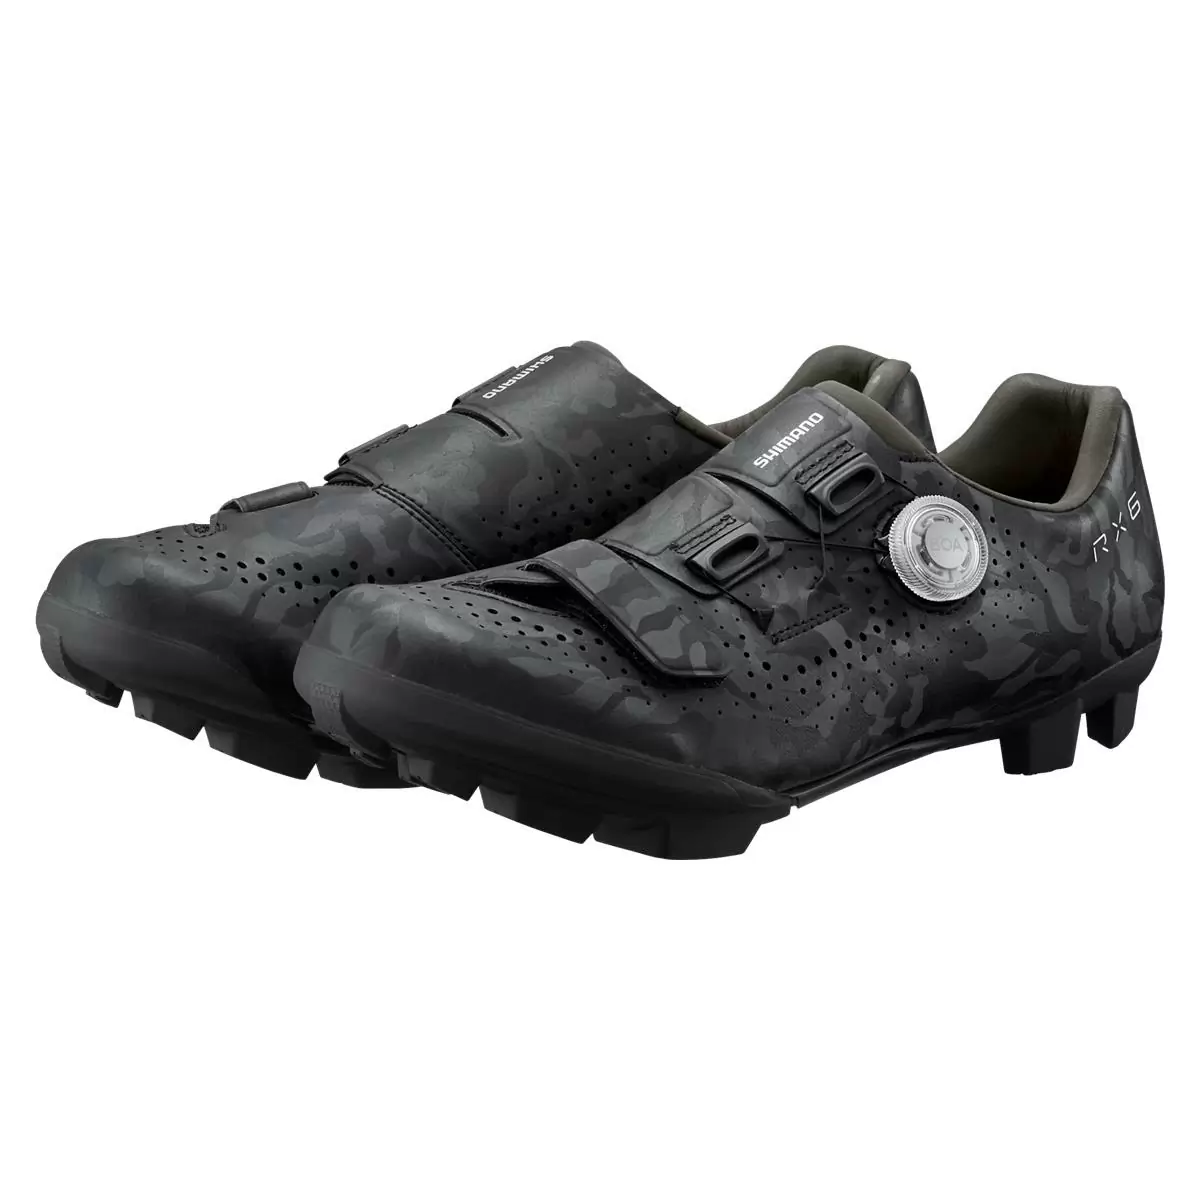 MTB / Gravel Shoes SH-RX600 RX6 Black Size 39 #1